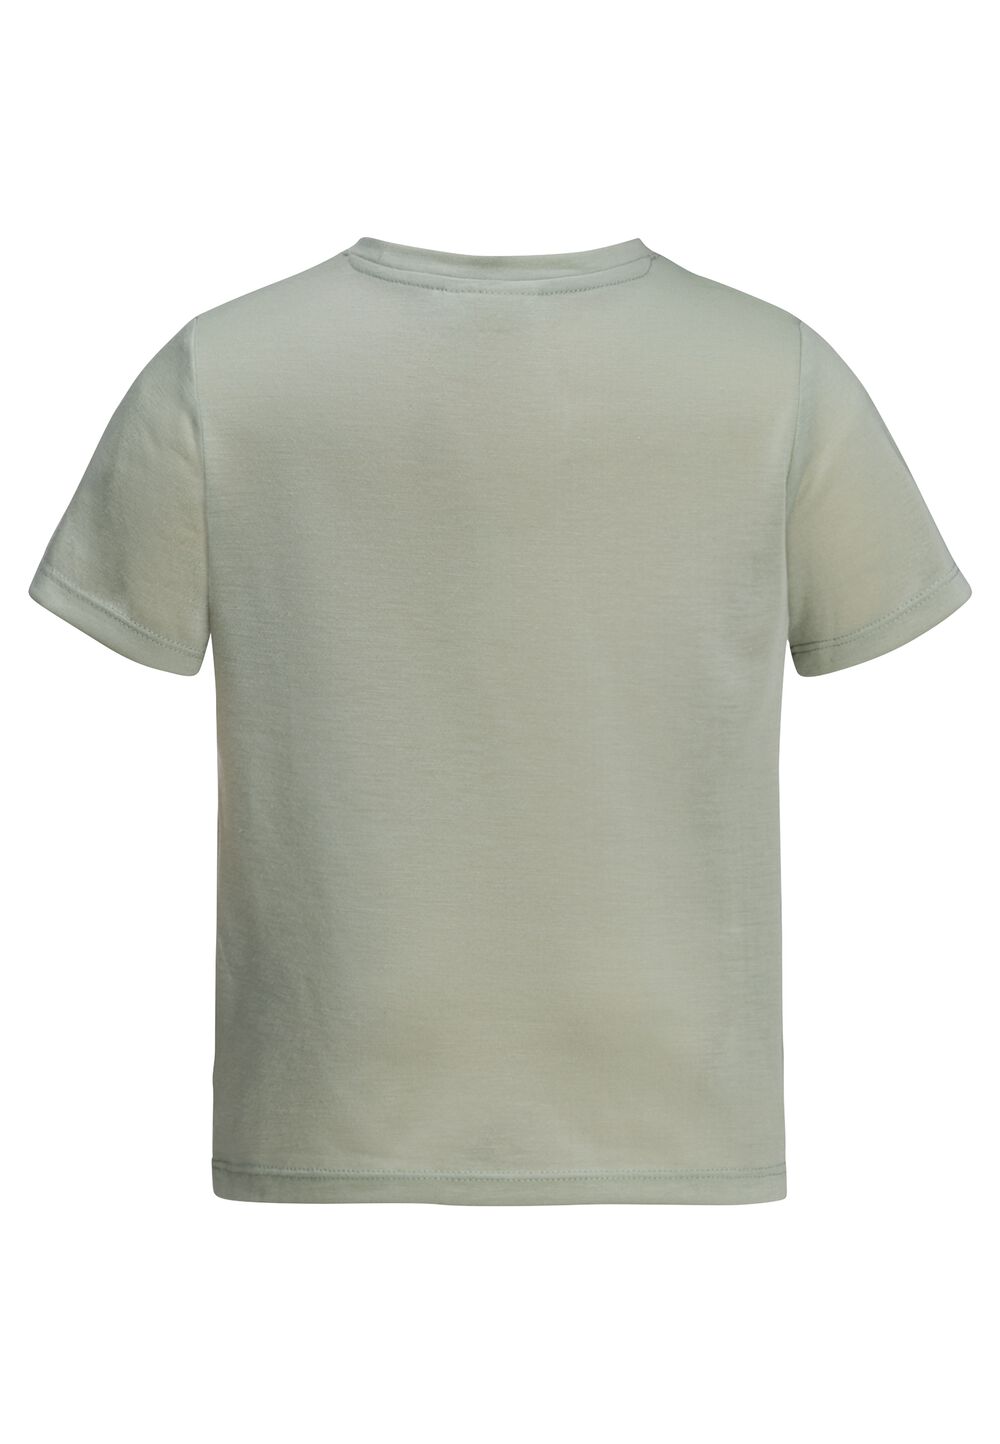 Jack Wolfskin Smileyworld Camp T-Shirt Kids Functioneel shirt Kinderen 104 mint leaf mint leaf